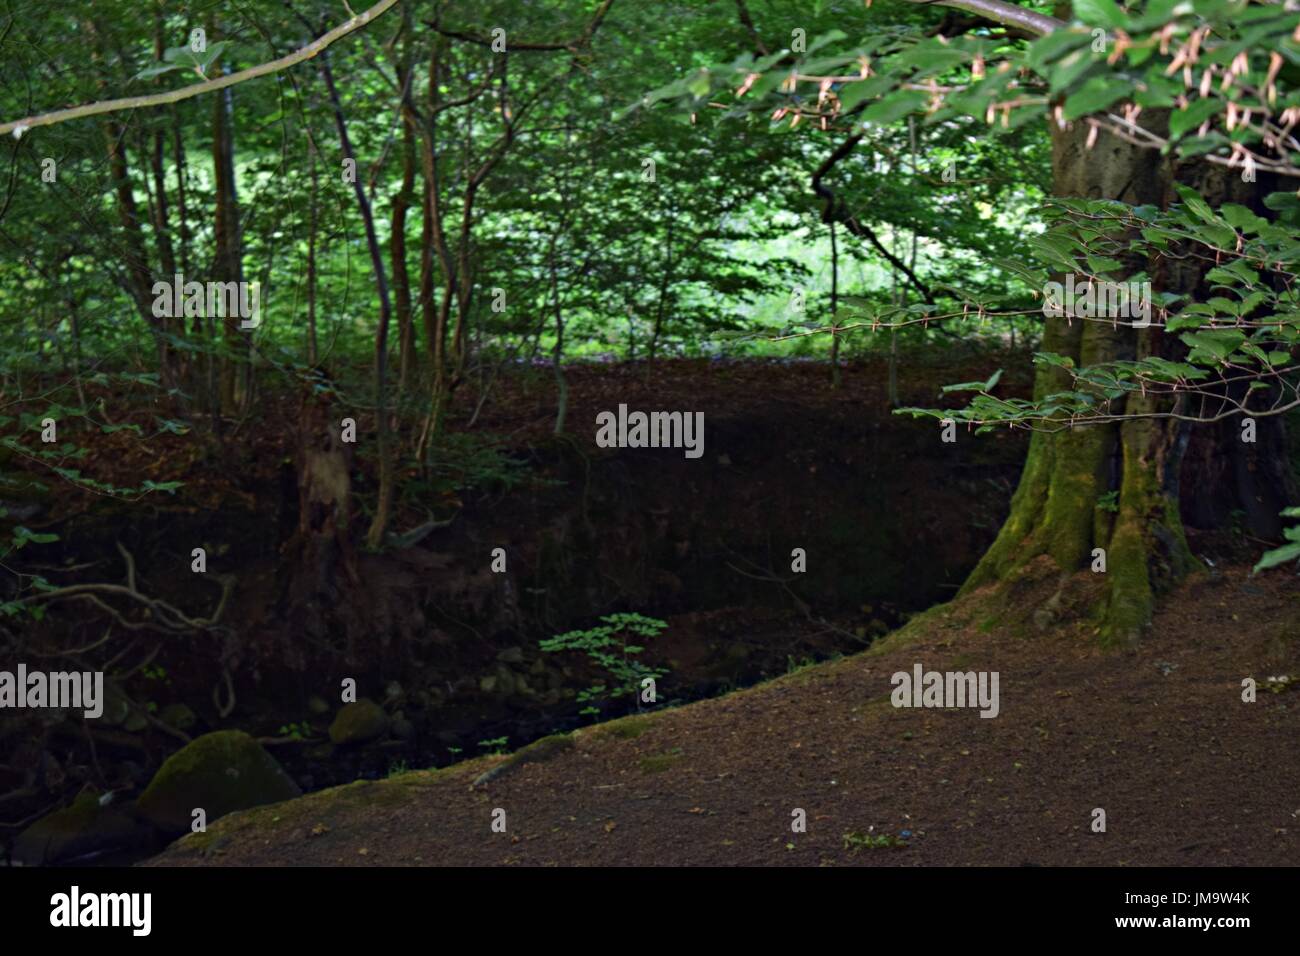 Zufallsbilder der Natur im Wald Stockfoto